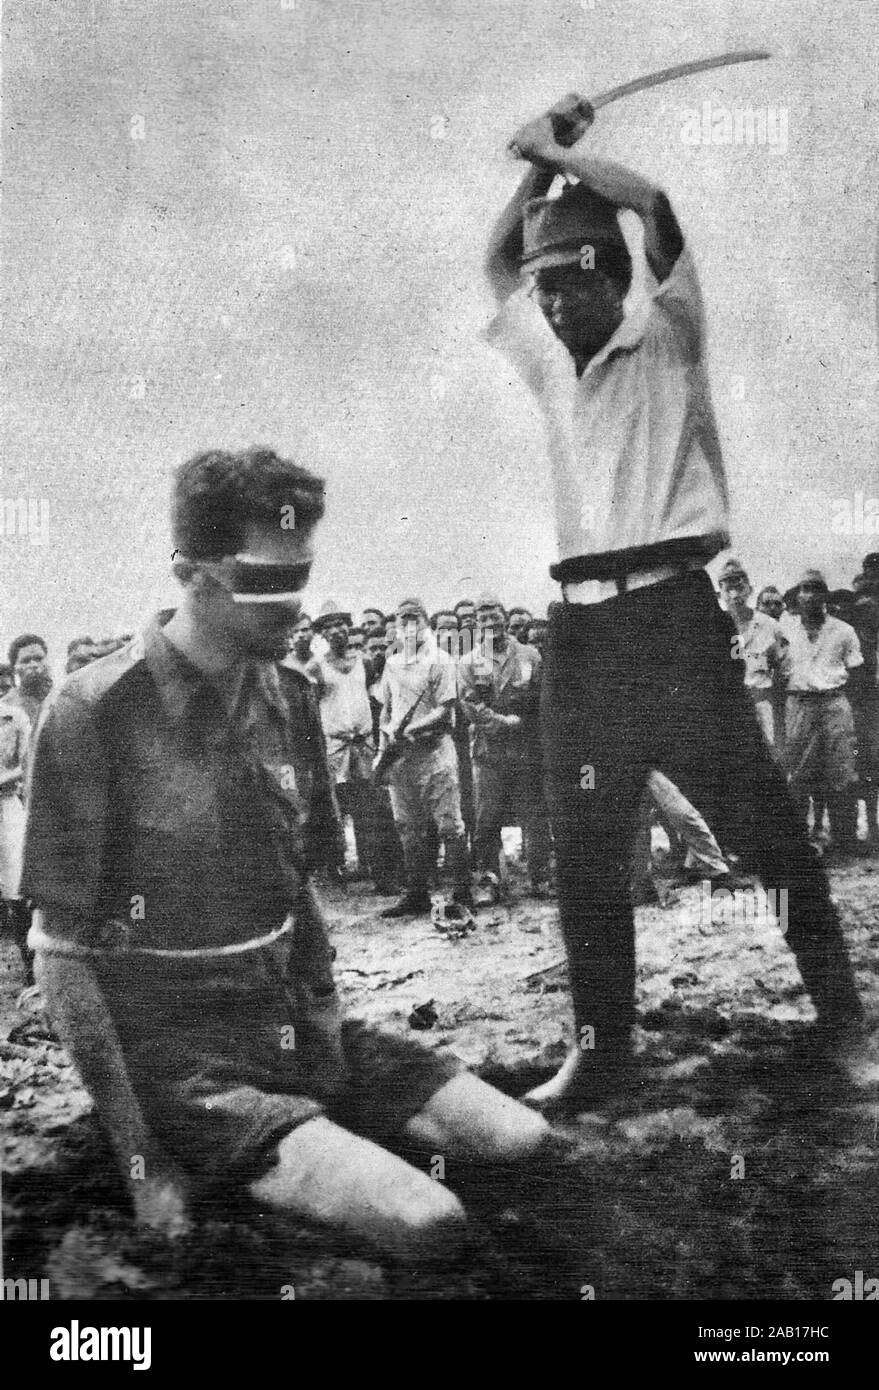 Aitape, Nueva Guinea. 24 de octubre de 1943. Una fotografía encontrada en el cadáver de un soldado japonés mostrando NX143314 Sargento (SGT) Leonard G. Siffleet de 'M' Unidad Especial, vistiendo una venda y con los brazos atados, a punto de ser decapitado con una espada por Yasuno Chikao. La ejecución fue ordenada por el Vicealmirante Kamada, el comandante de las Fuerzas Navales japonesas en Aitape. El sargento Siffleet fue capturado con privados (Pte) y Pte Pattiwahl Ambonese Reharin, miembros de las Fuerzas Indias Orientales Neerlandesas, mientras realizaban operaciones de reconocimiento detrás de las líneas japonesas. Yasuno Chikao murieron antes del final de la guerra Foto de stock